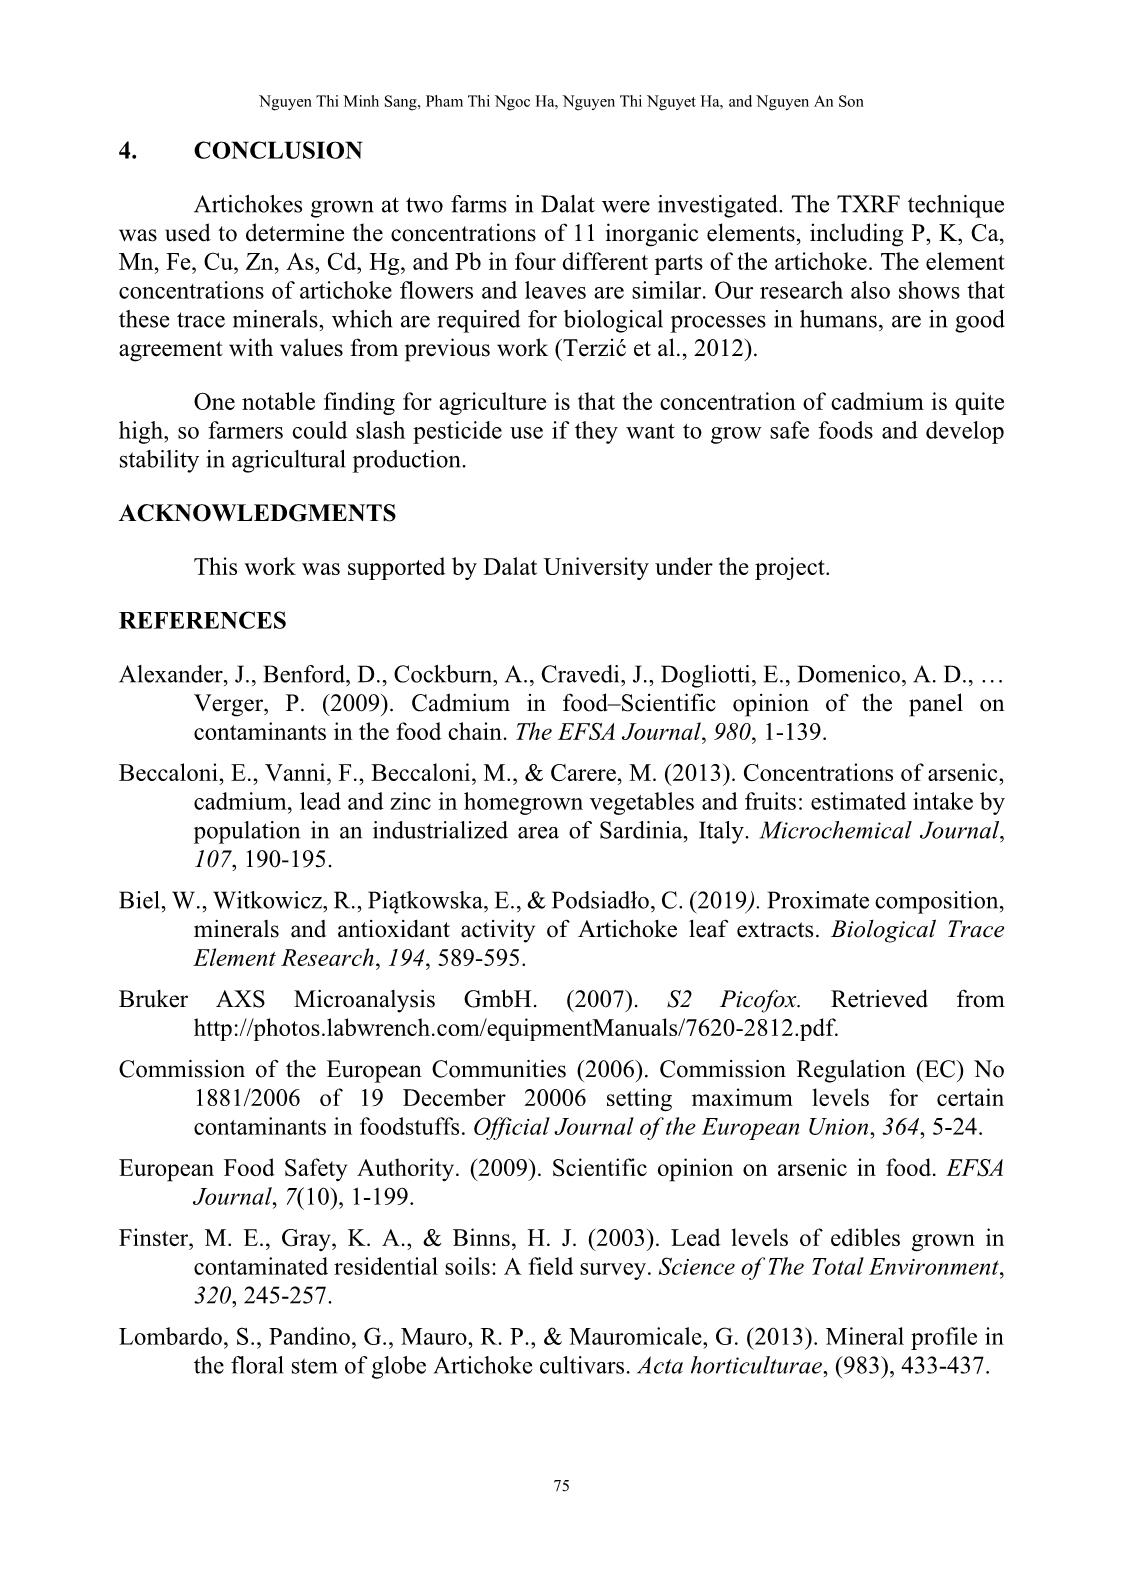 Phân tích định lượng các nguyên tố vết trong cây artichoke tại thành phố đà lạt sử dụng phương pháp huỳnh quang tia X phản xạ toàn phần trang 9